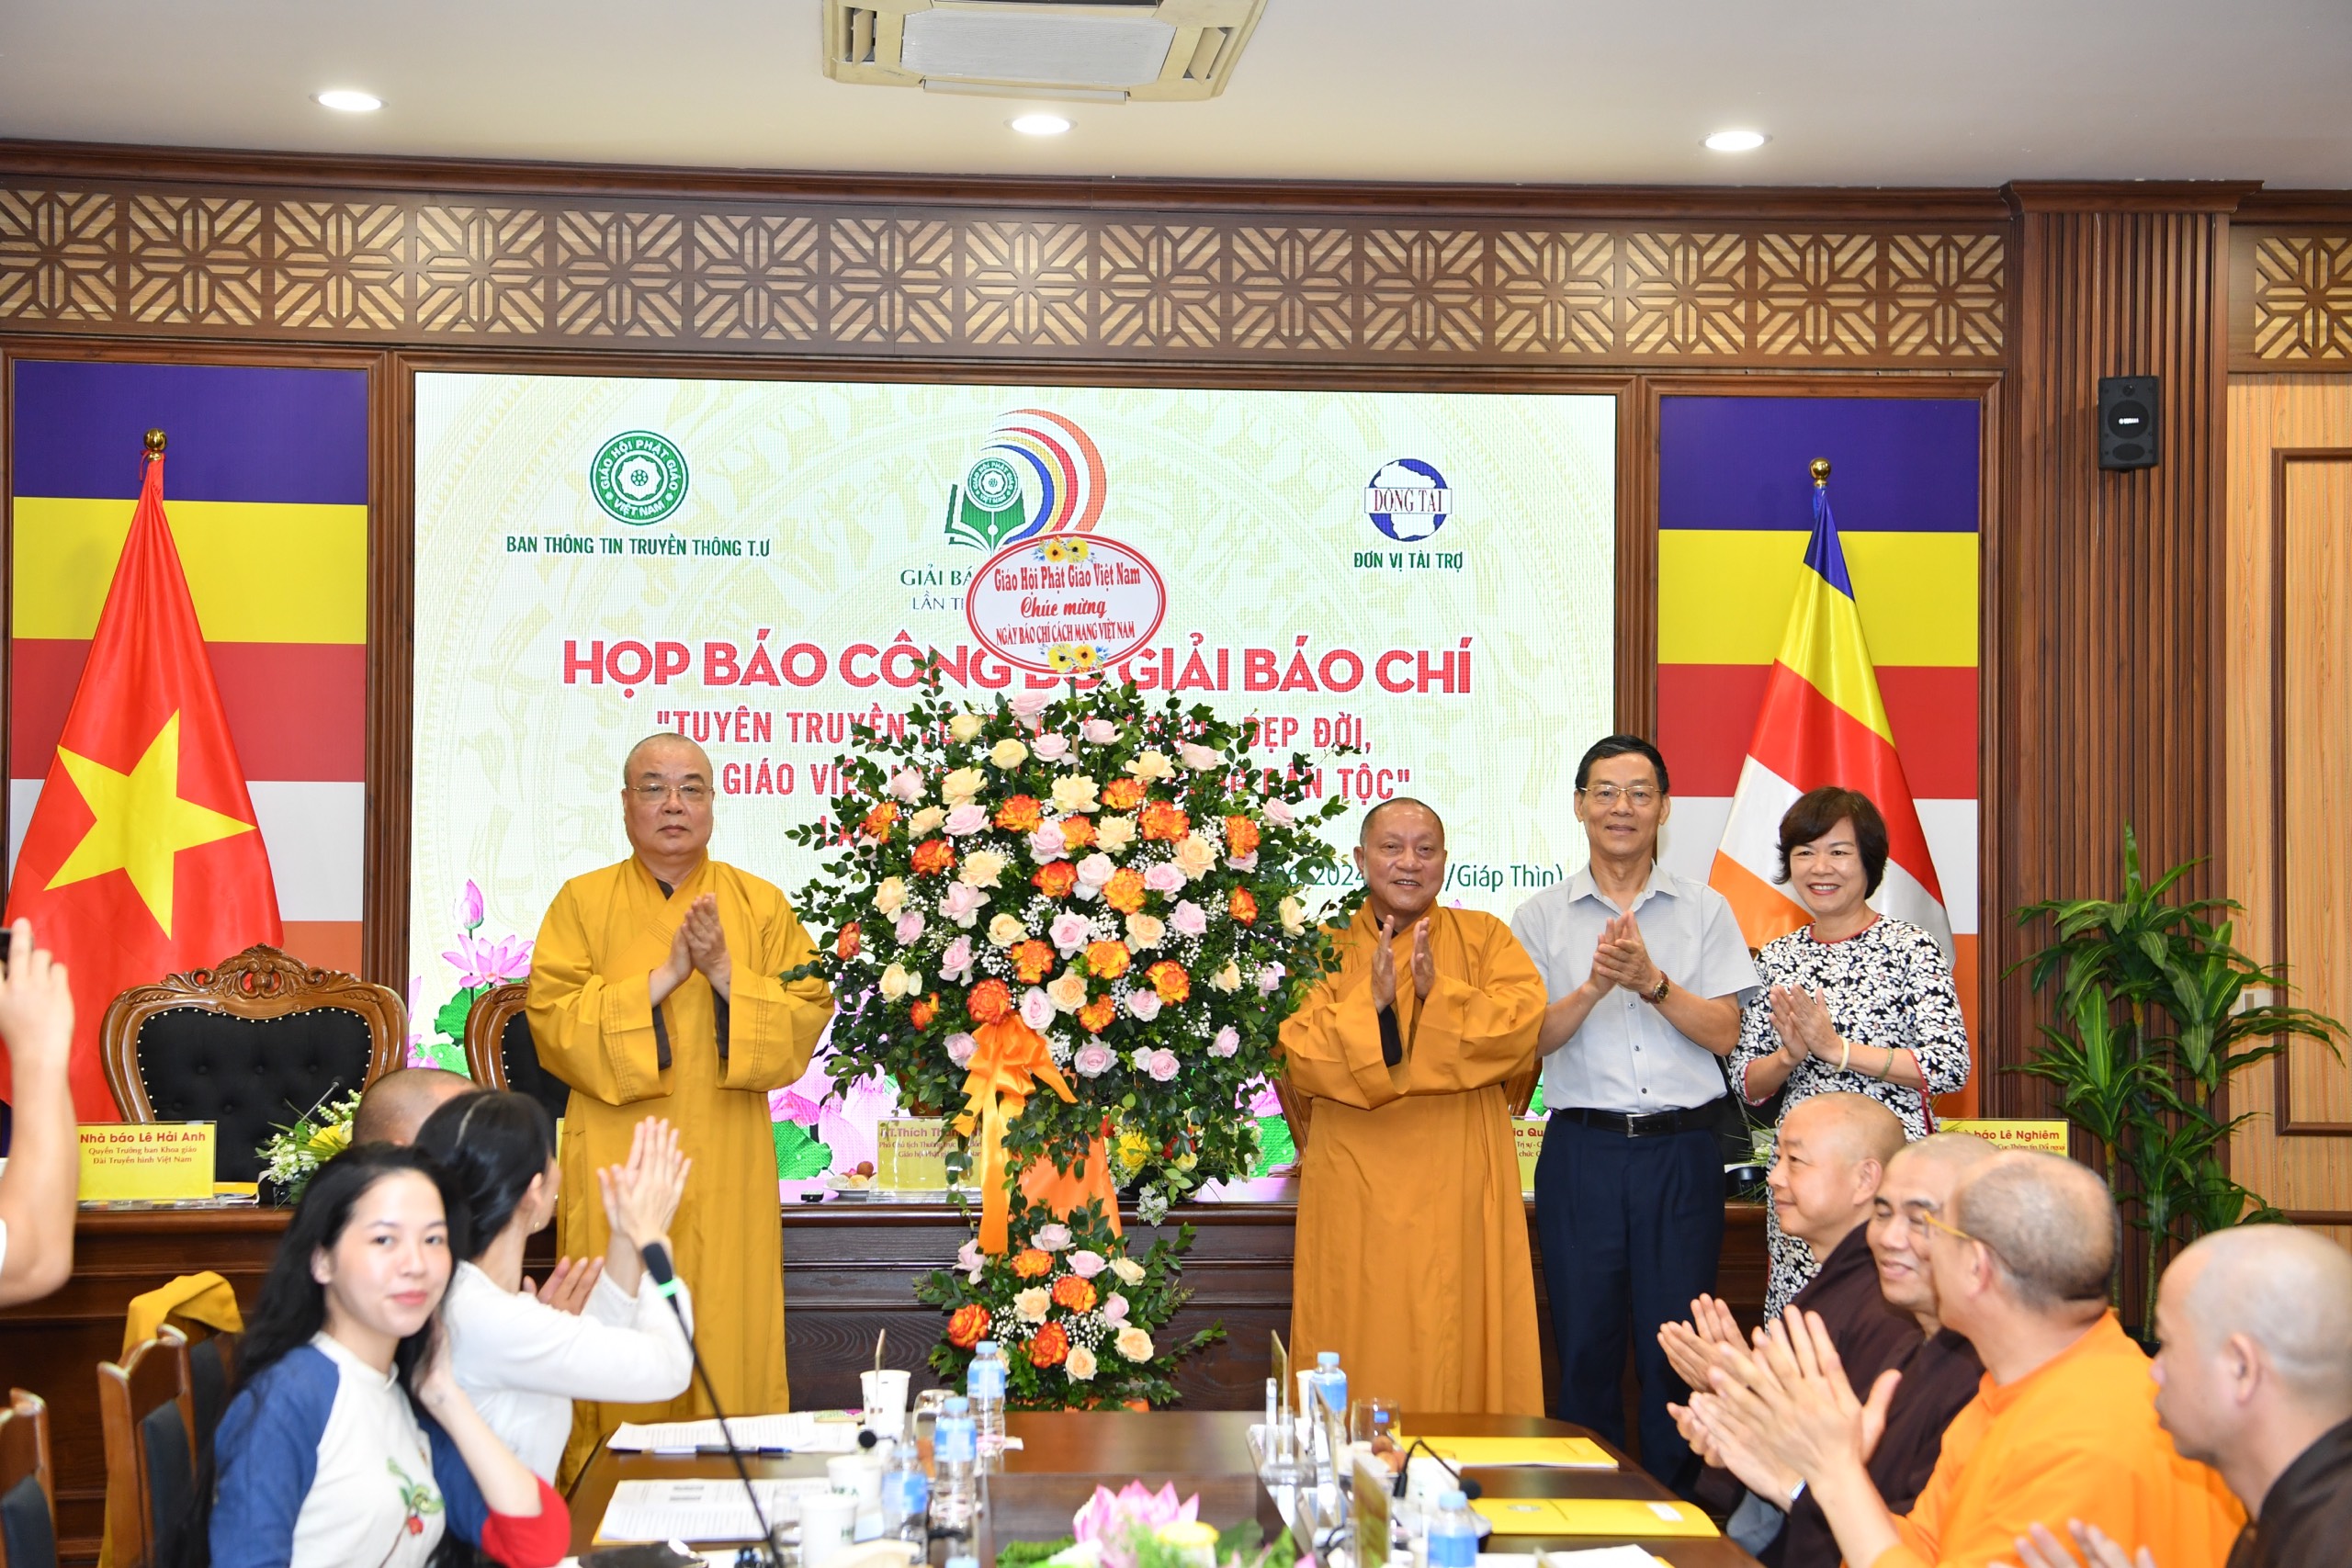 Lần đầu tiên tổ chức Giải Báo chí toàn quốc viết về Phật giáo - Ảnh 2.